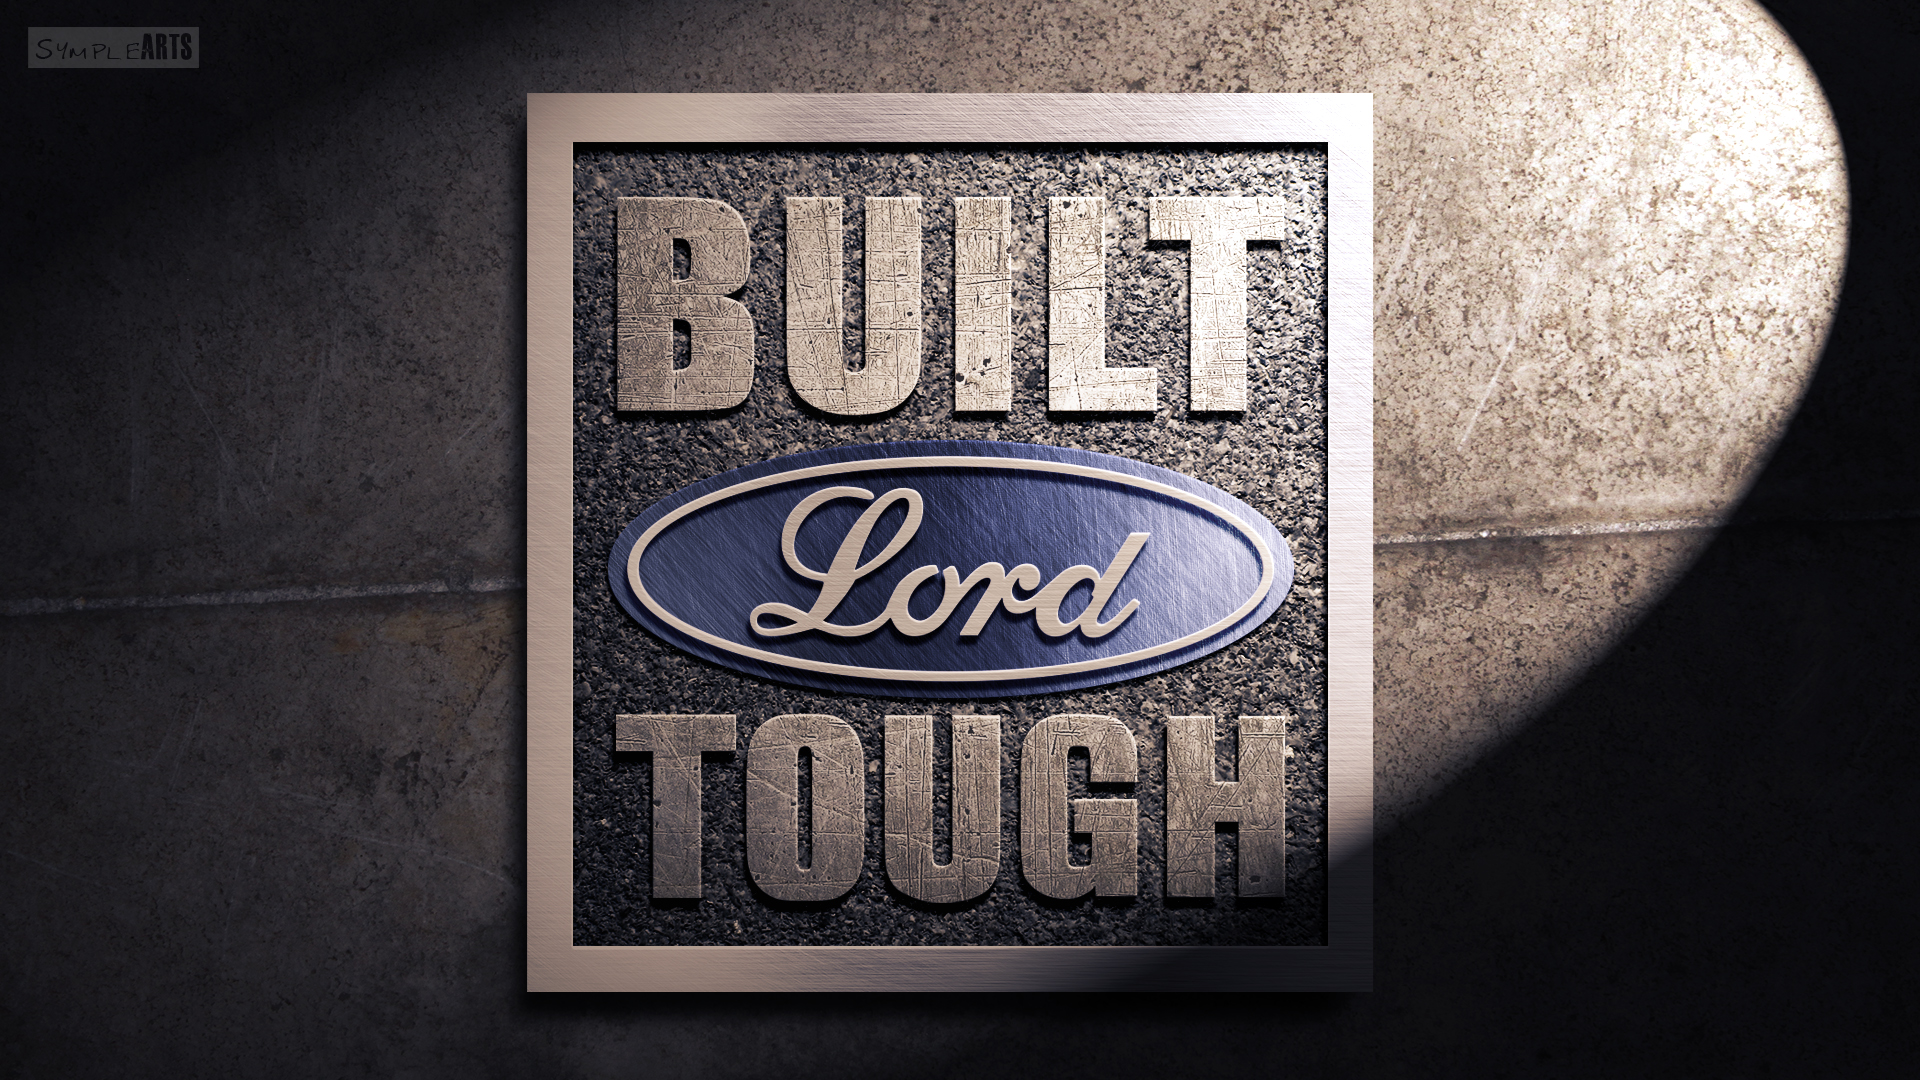 Built Ford Tough Wallpaper. Tough